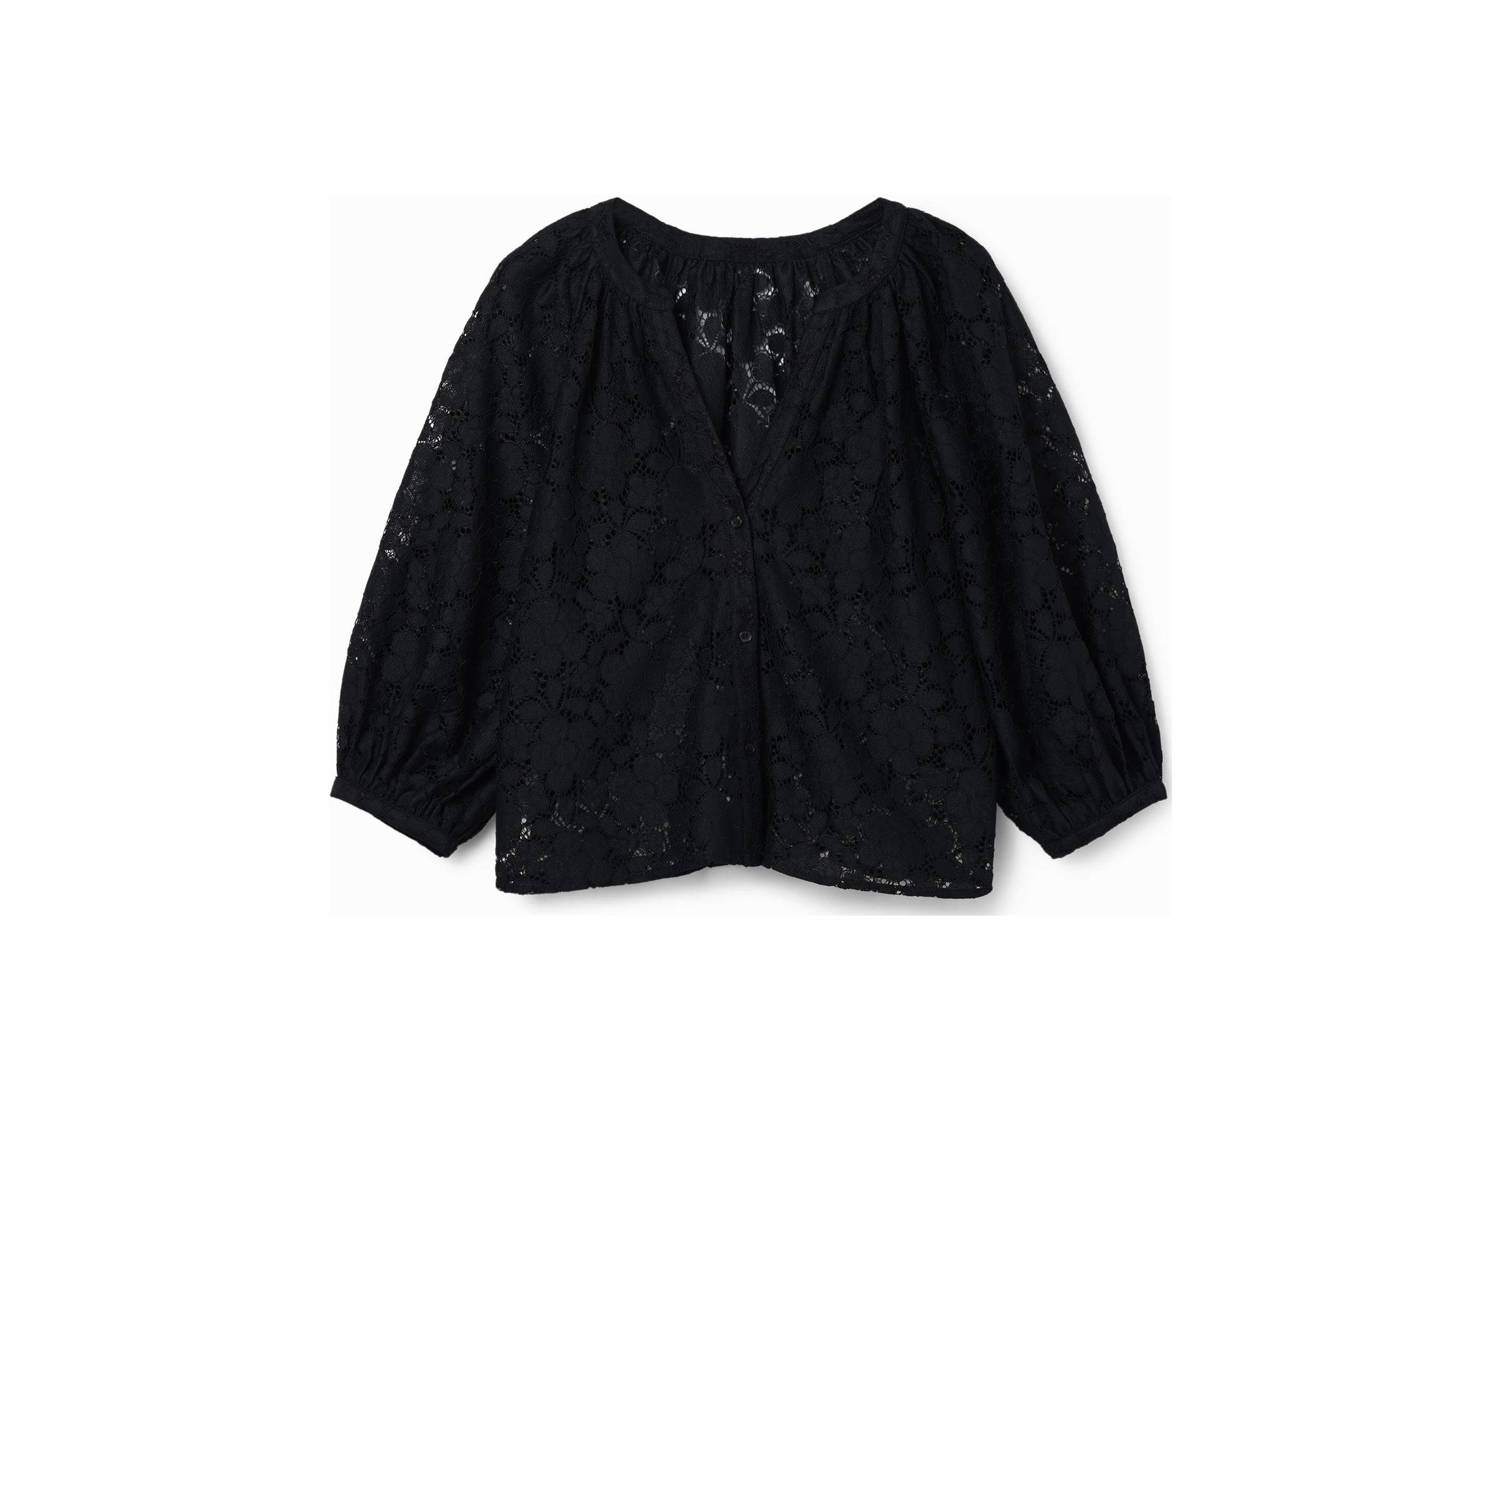 Desigual blouse zwart